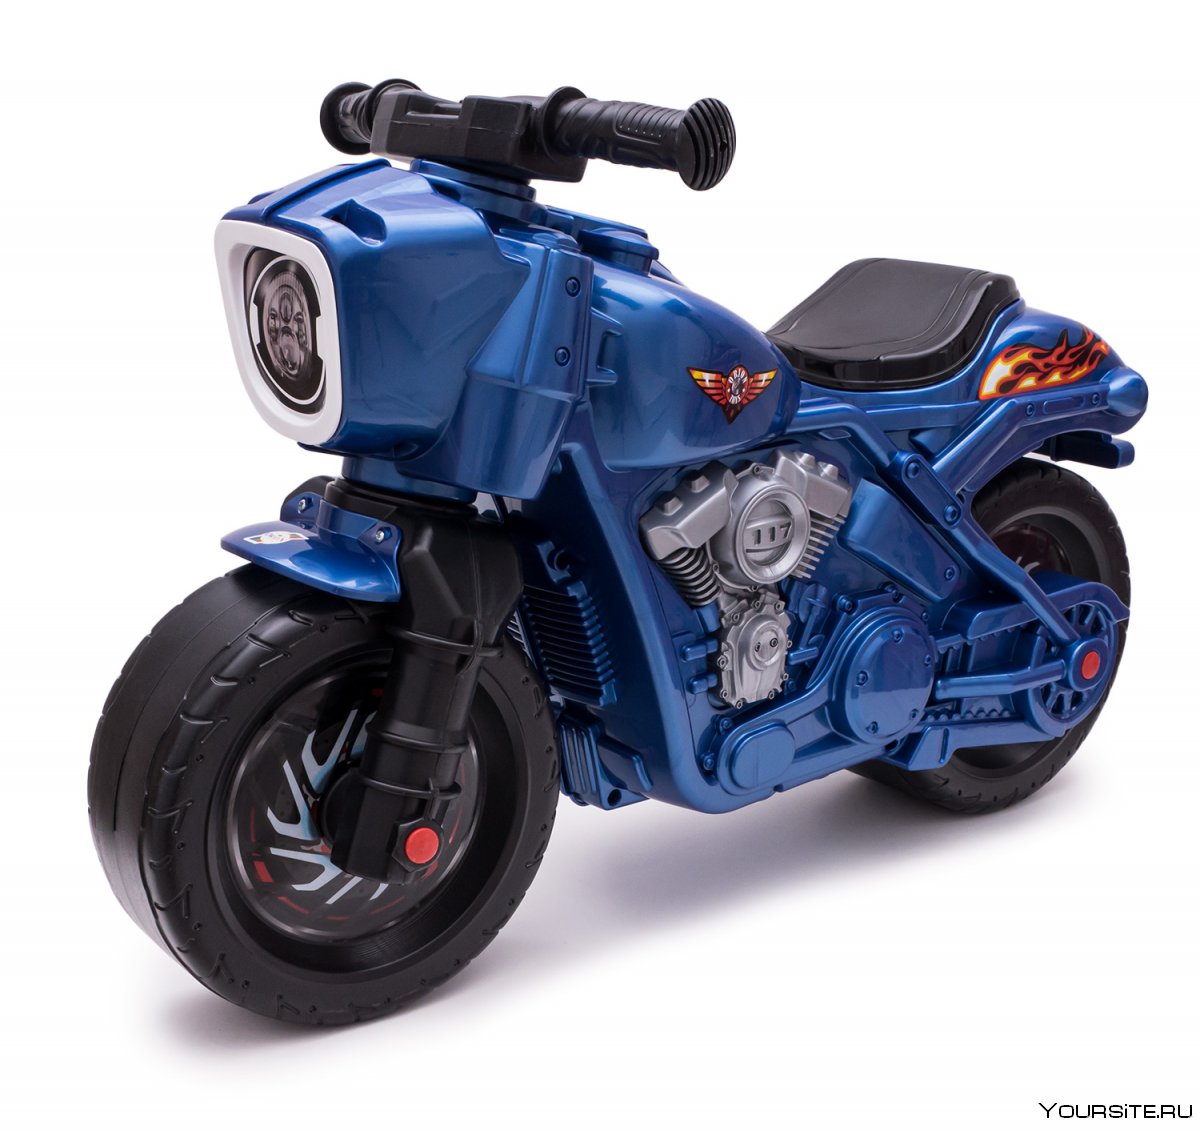 Мотоцикл скутер салатовый в пакете Орион ор502 МЕГАТОЙС